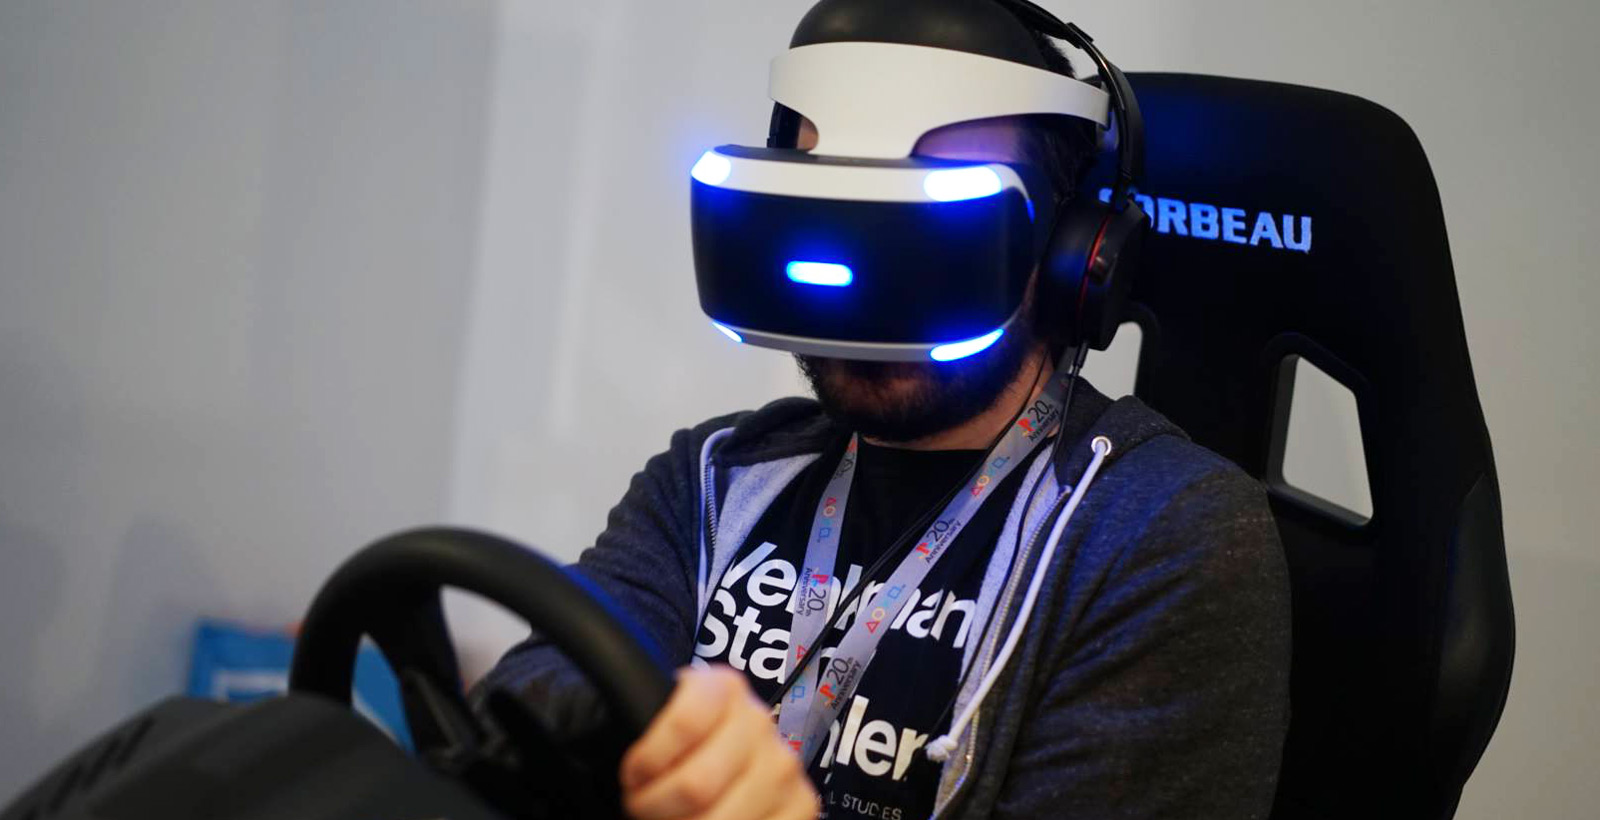 Lorsque j'ai essayé le PlayStation VR au début du mois, le module de traitement était bien caché (Photo : Stéphane Vaillancourt).